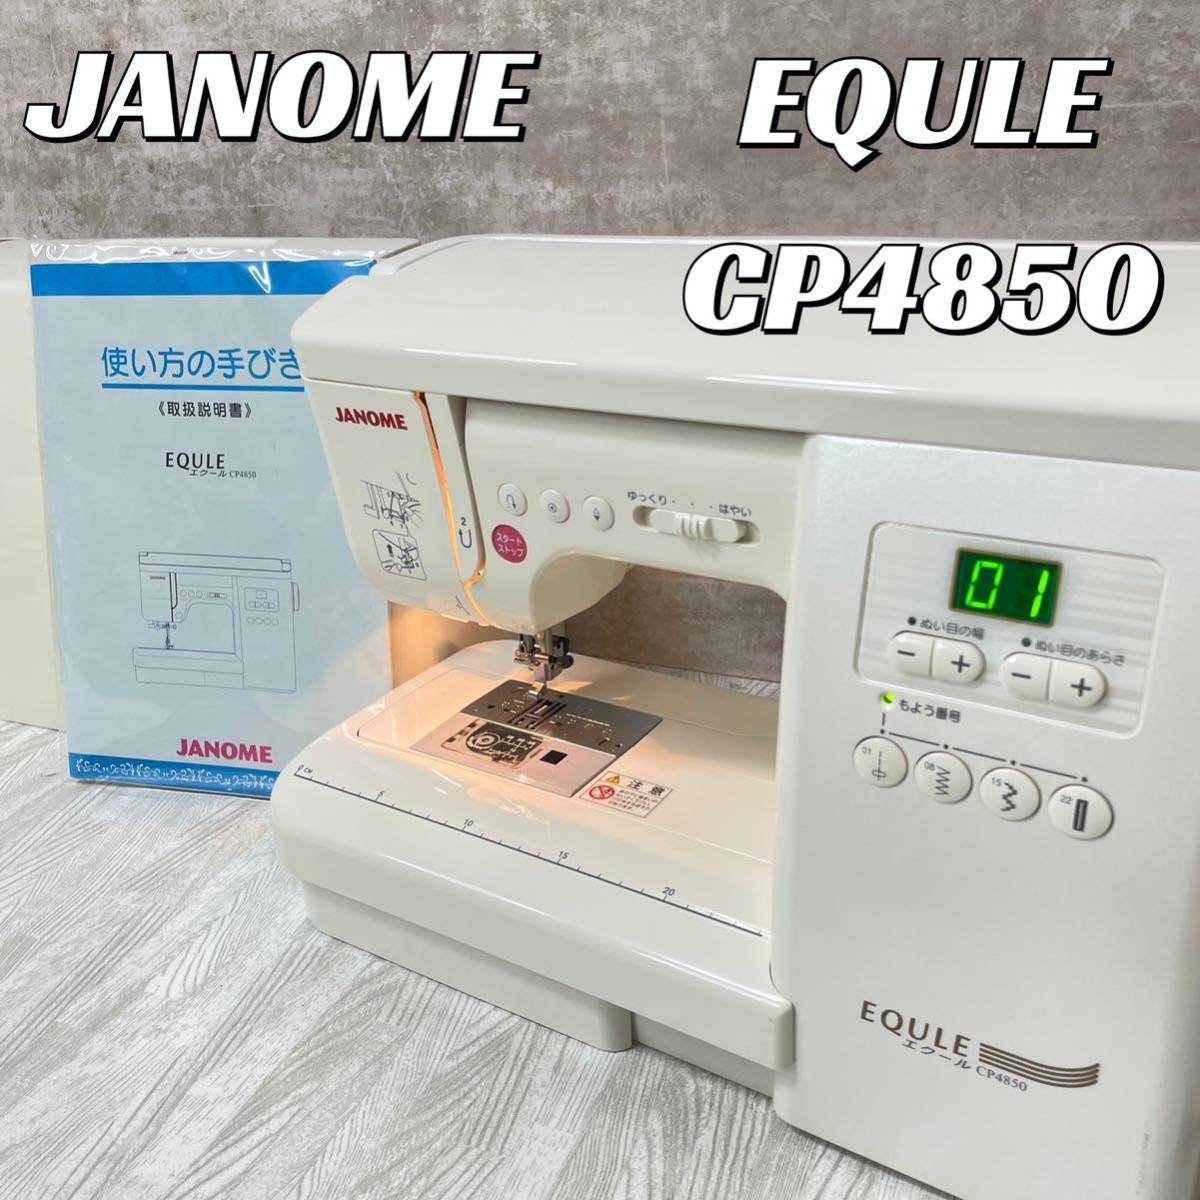 【中古良品】JANOME エクールCP4850 コンピューターミシン EQULE ジャノメ